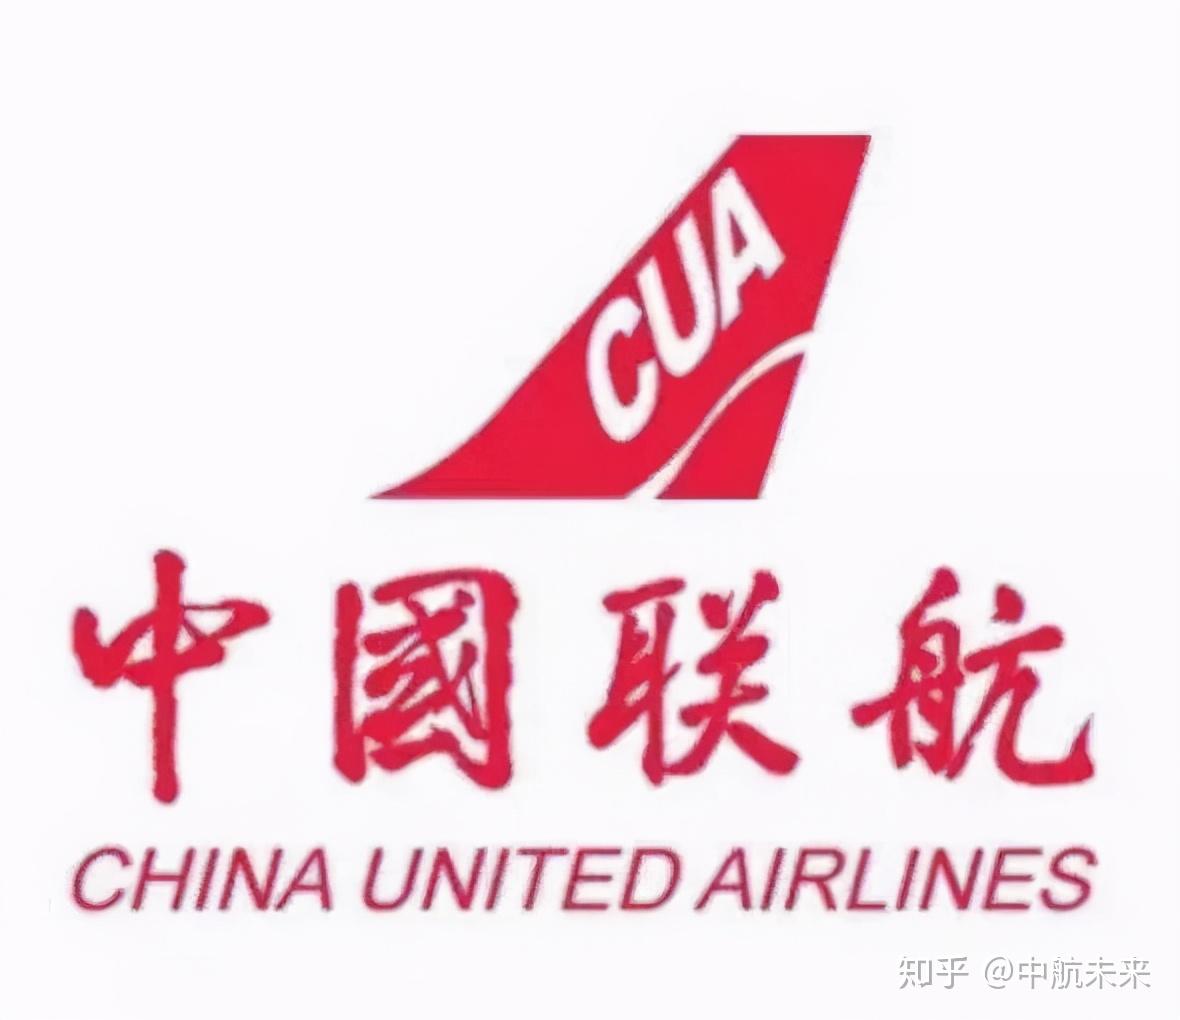 香港航空将开通香港=普吉航线 - 民用航空网